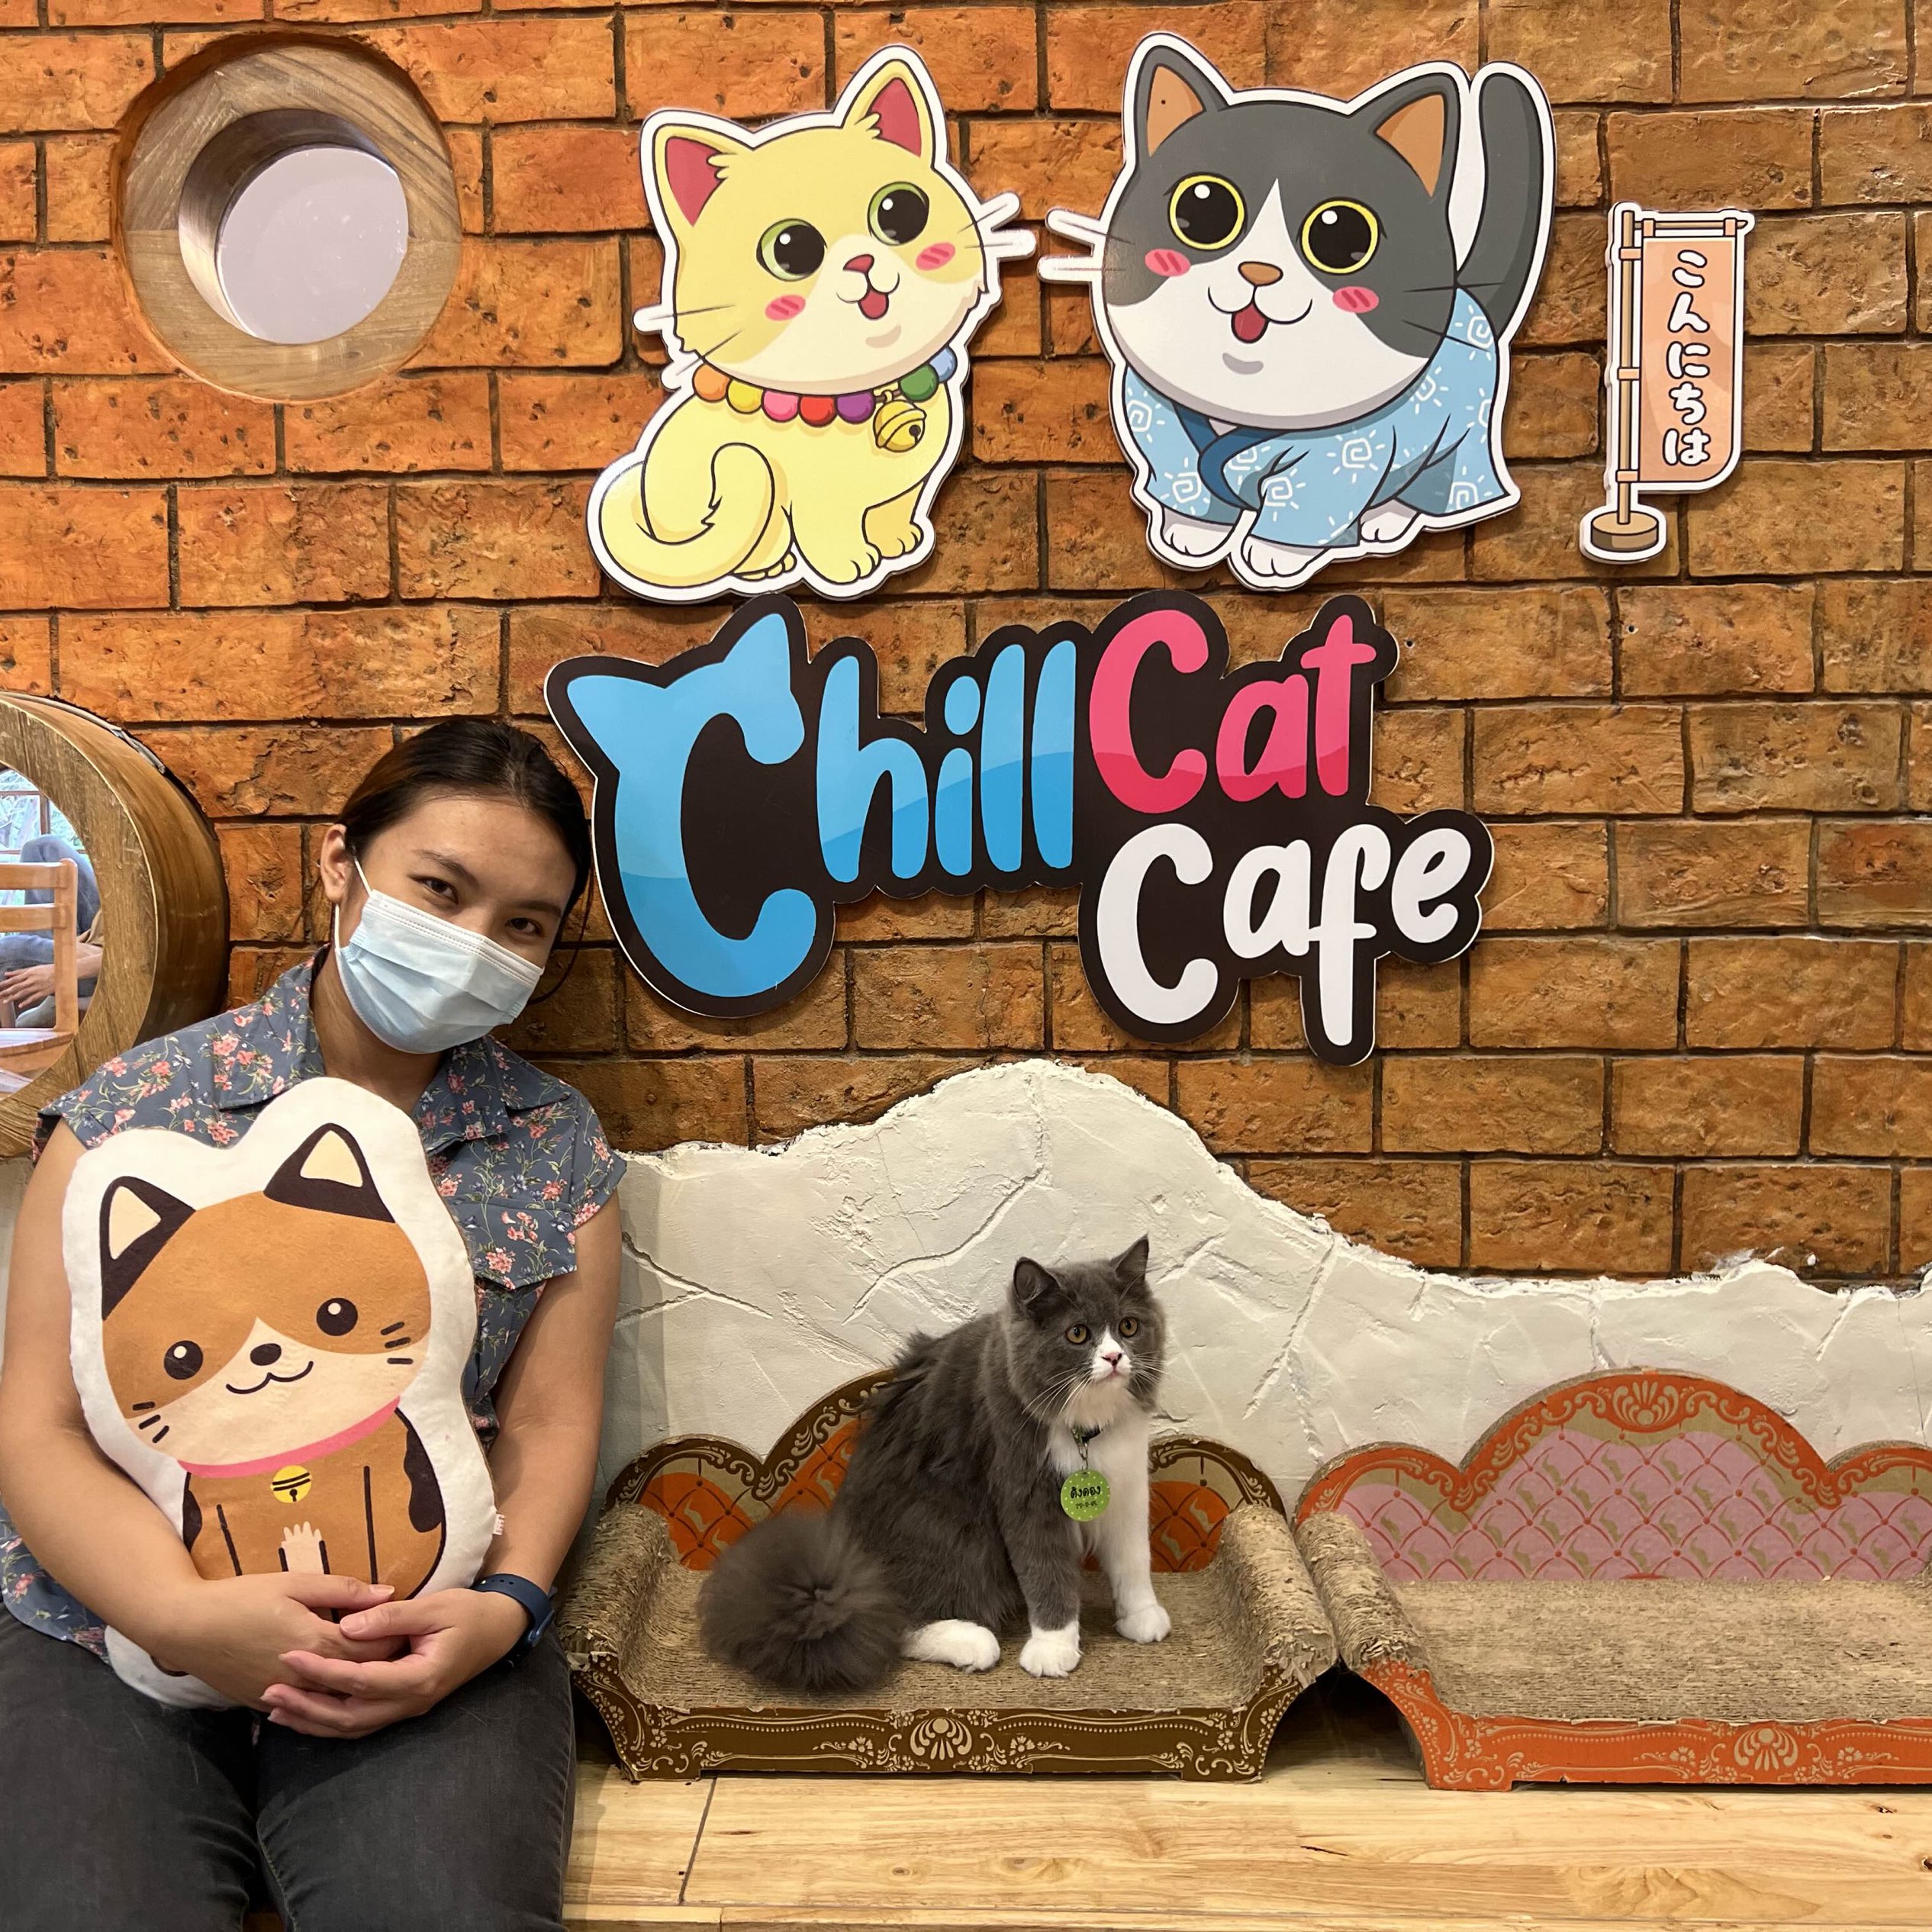 凉爽猫咖啡馆,佛统猫咖啡馆!!📌 🐱